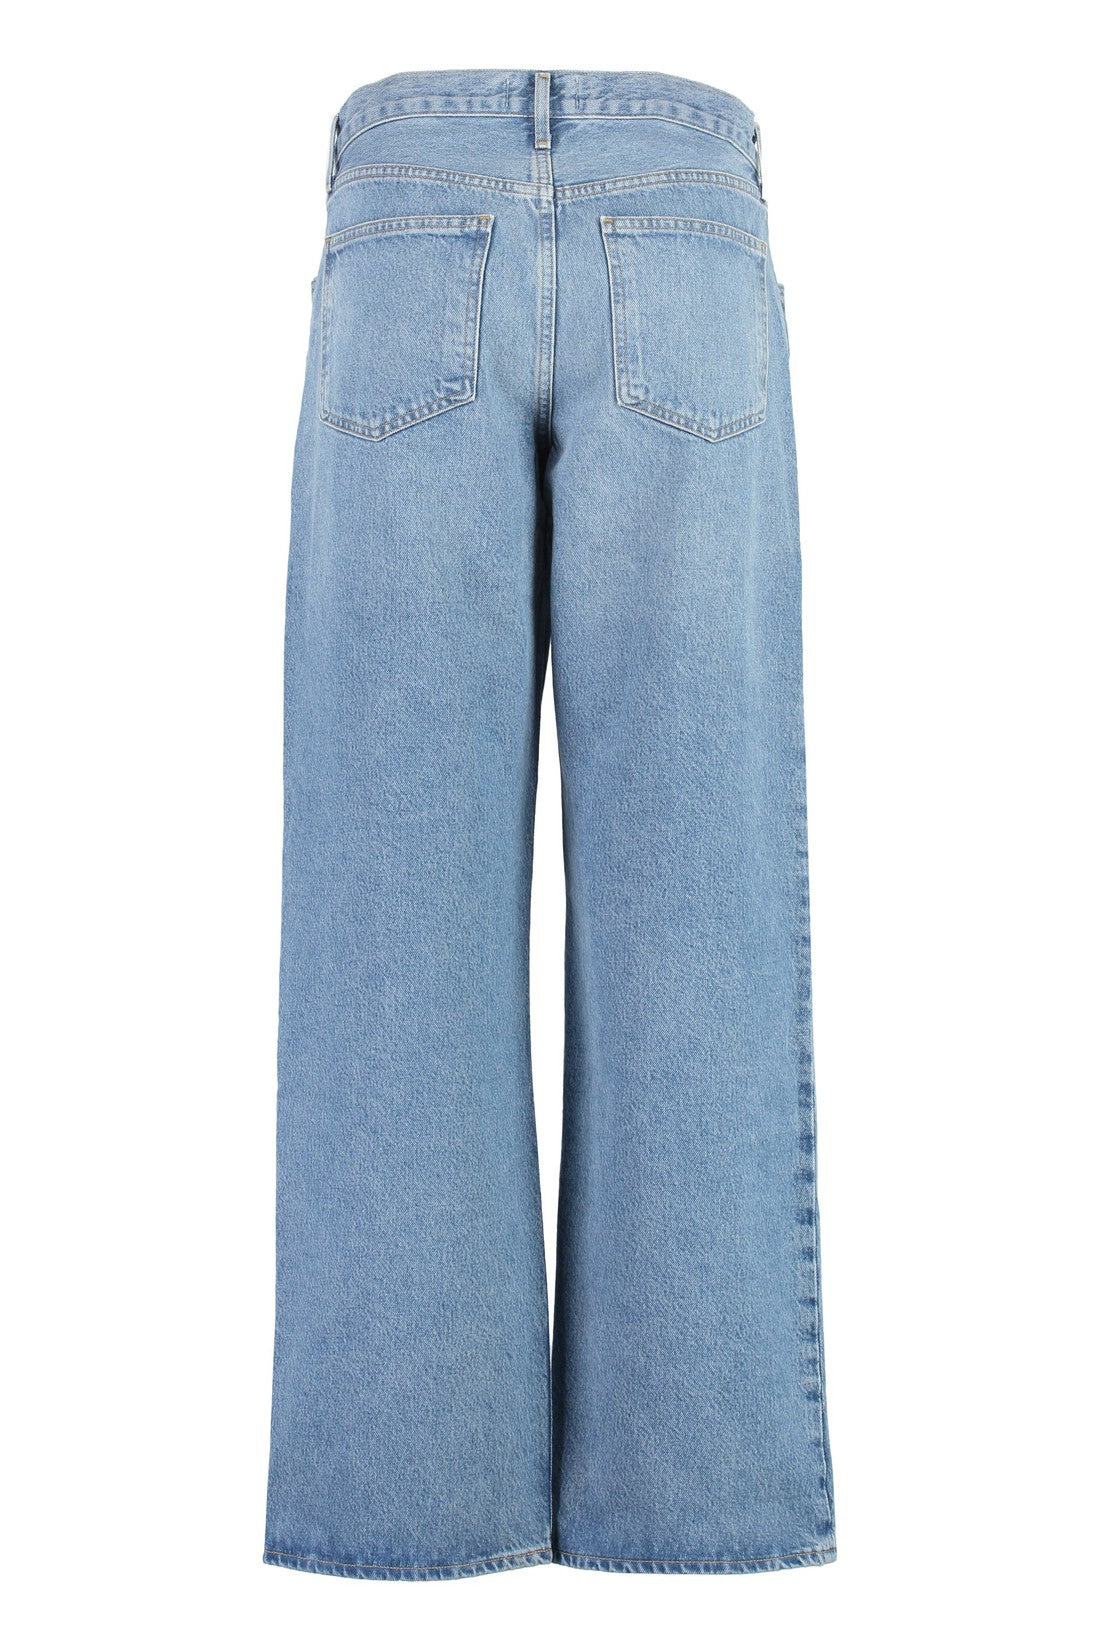 AGOLDE-OUTLET-SALE-Fusion baggy jeans-ARCHIVIST